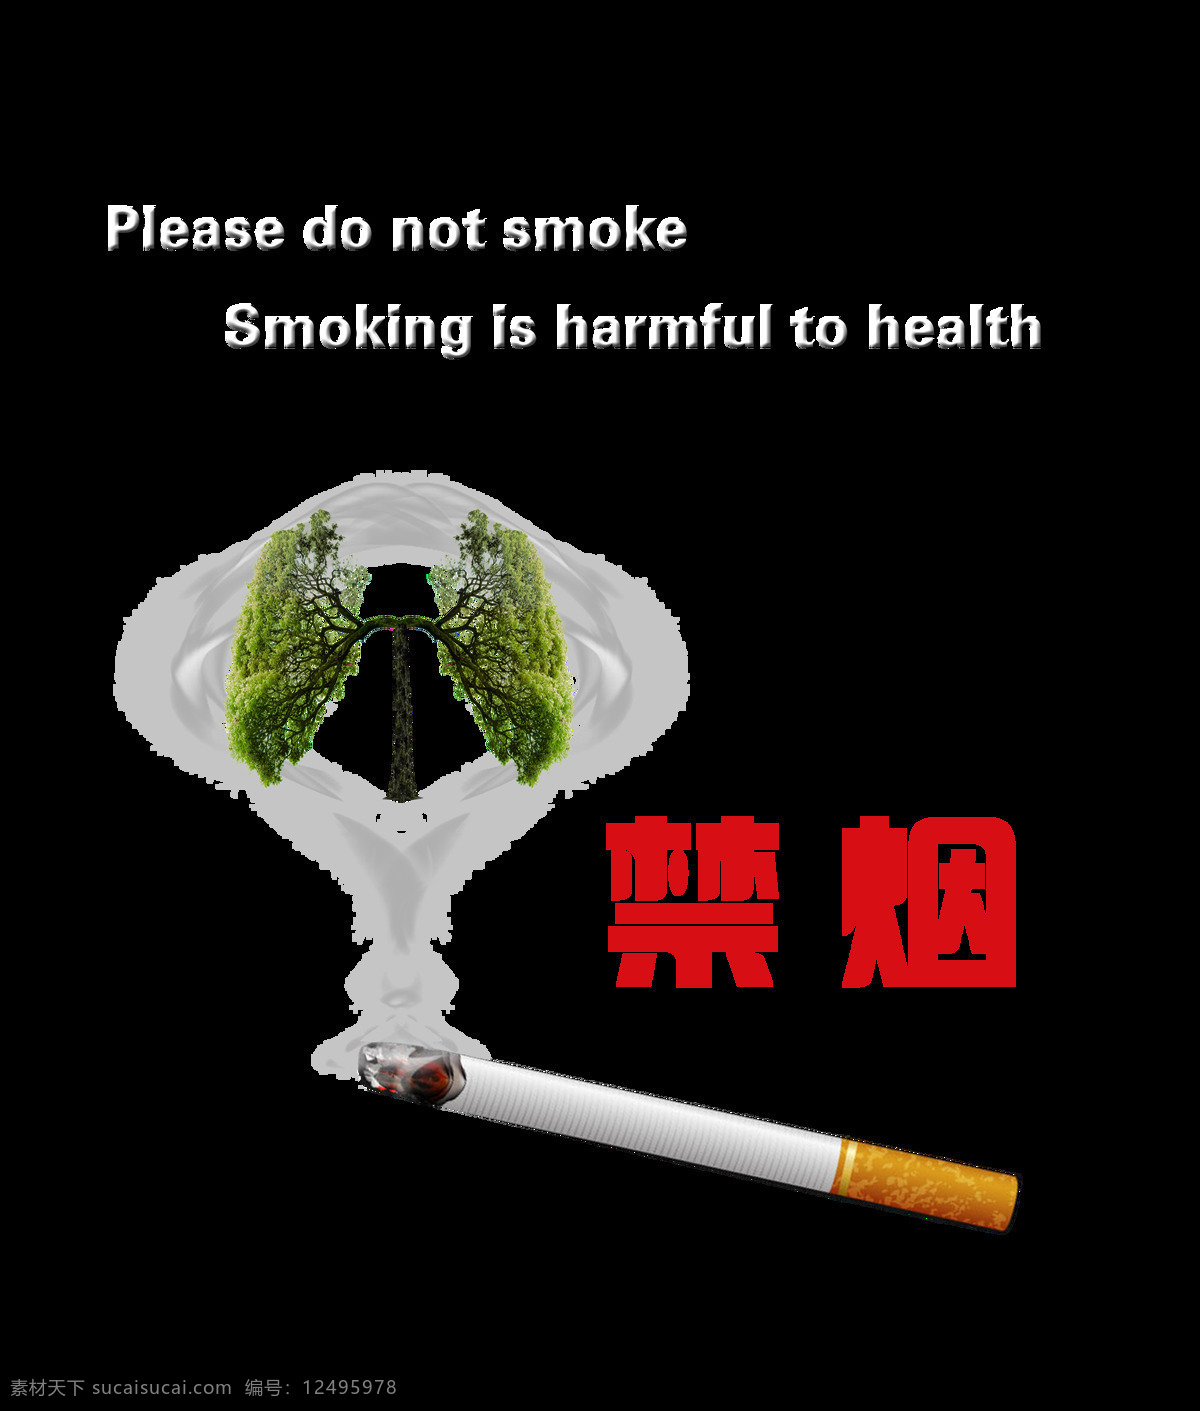 禁烟 戒烟 吸烟 有害 健康 保护 肺部 艺术 字 字体 广告 元素 禁烟戒烟 吸烟有害健康 保护肺部 警告 艺术字 海报